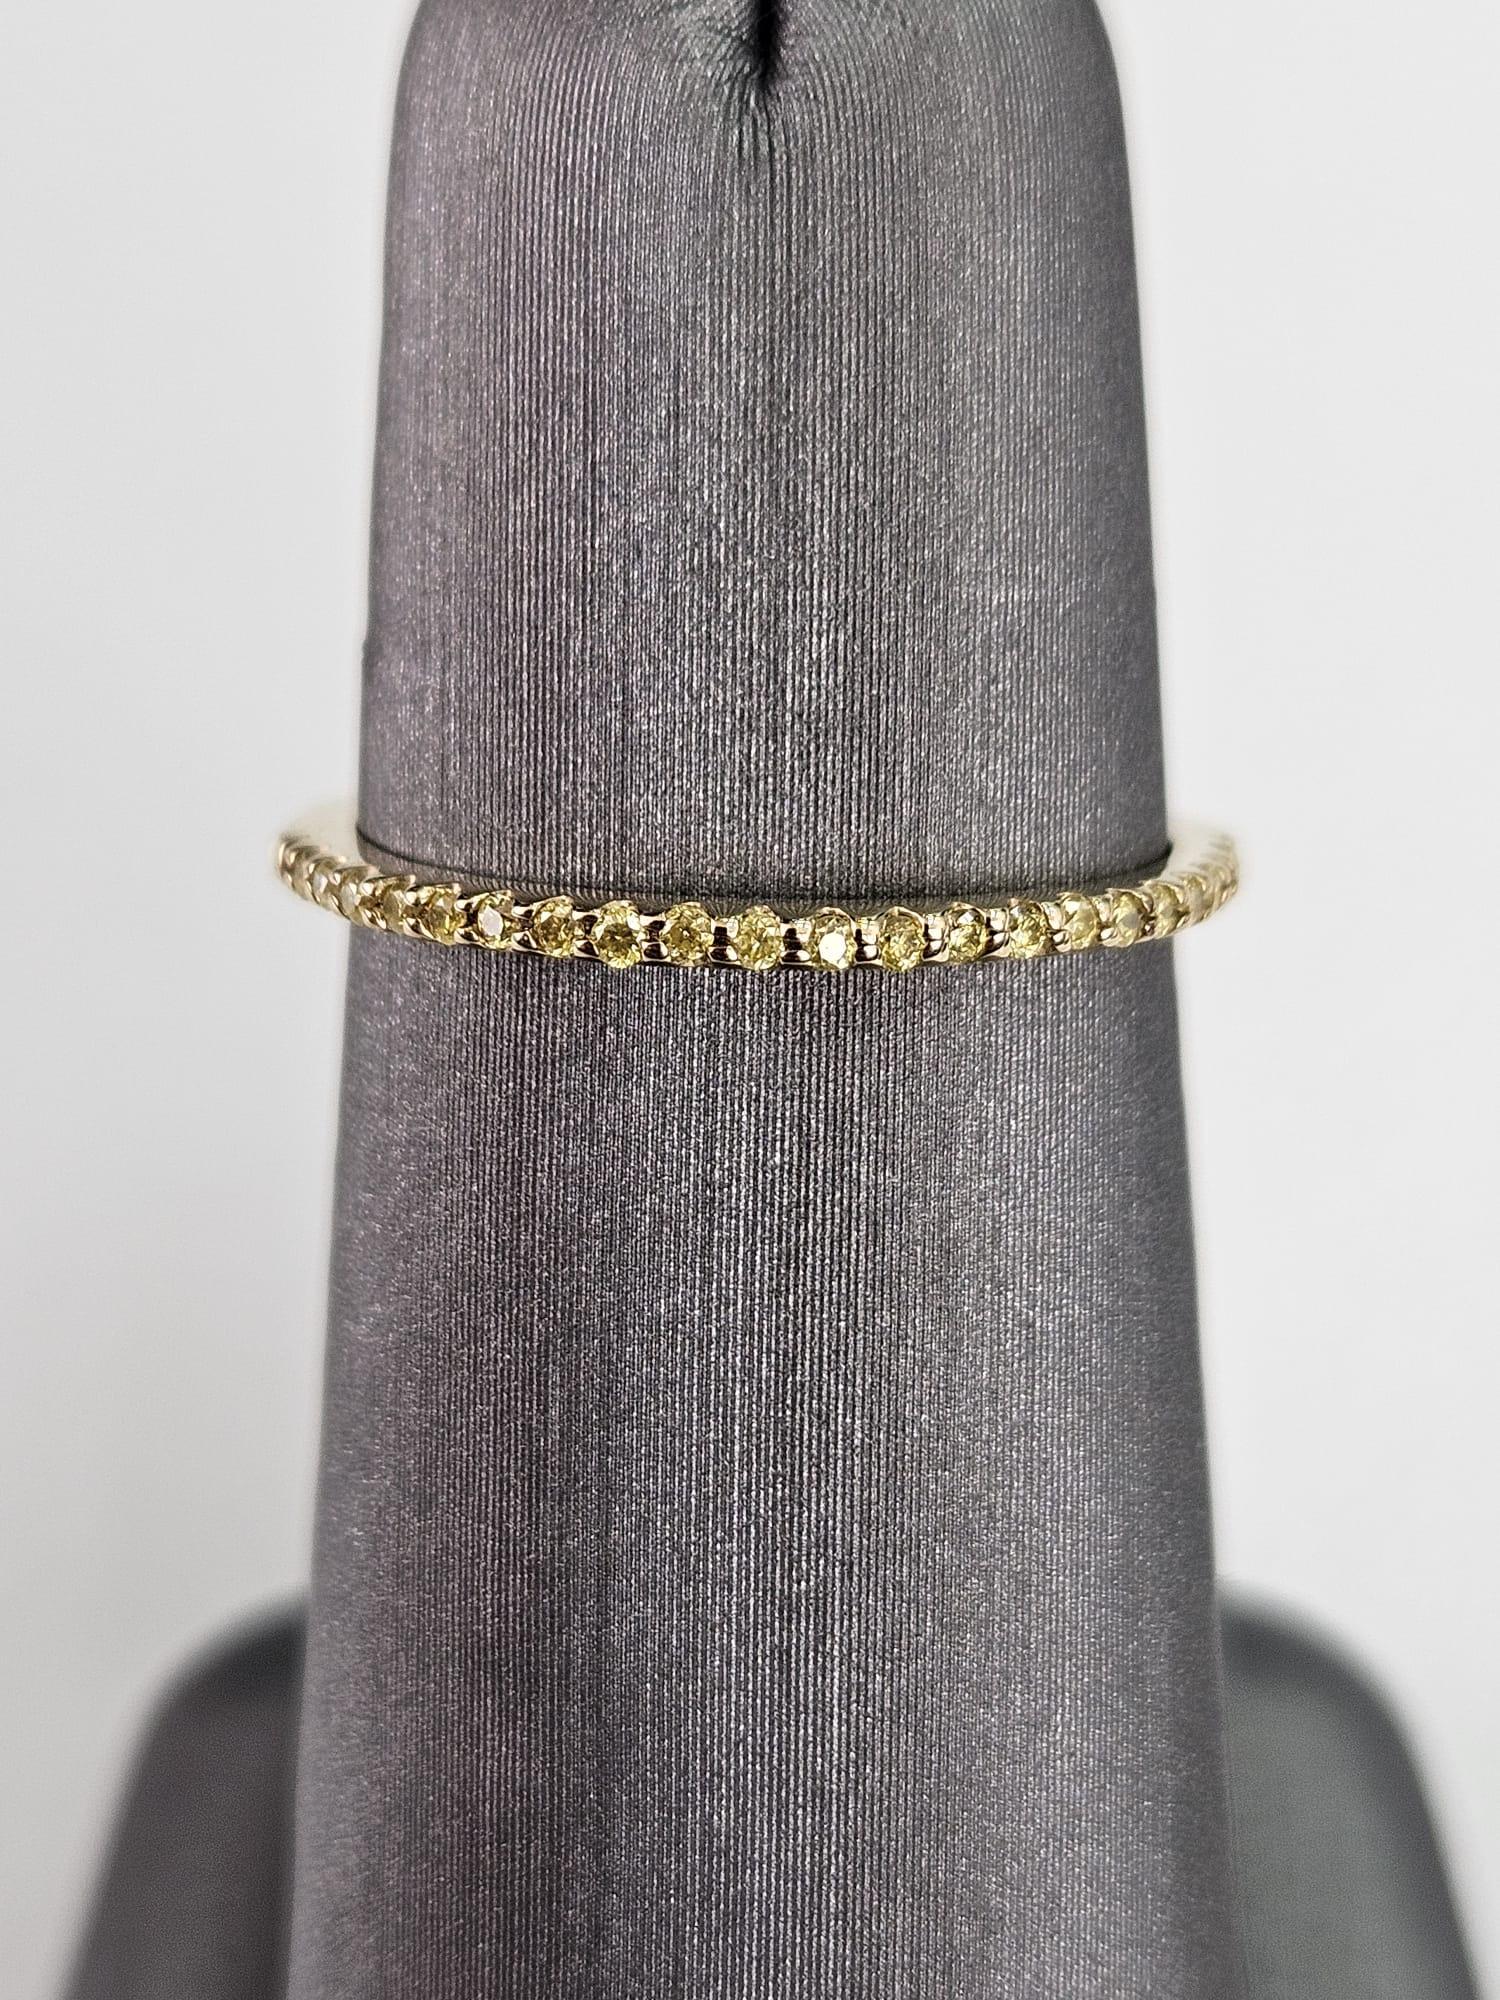 Voici une luxueuse et captivante bague à anneau en diamant jaune fantaisie de 0,11 carat, exquisément réalisée en or jaune radieux, conçue pour enchanter par son extraordinaire brillance. Cette magnifique bague présente un anneau orné d'une rangée